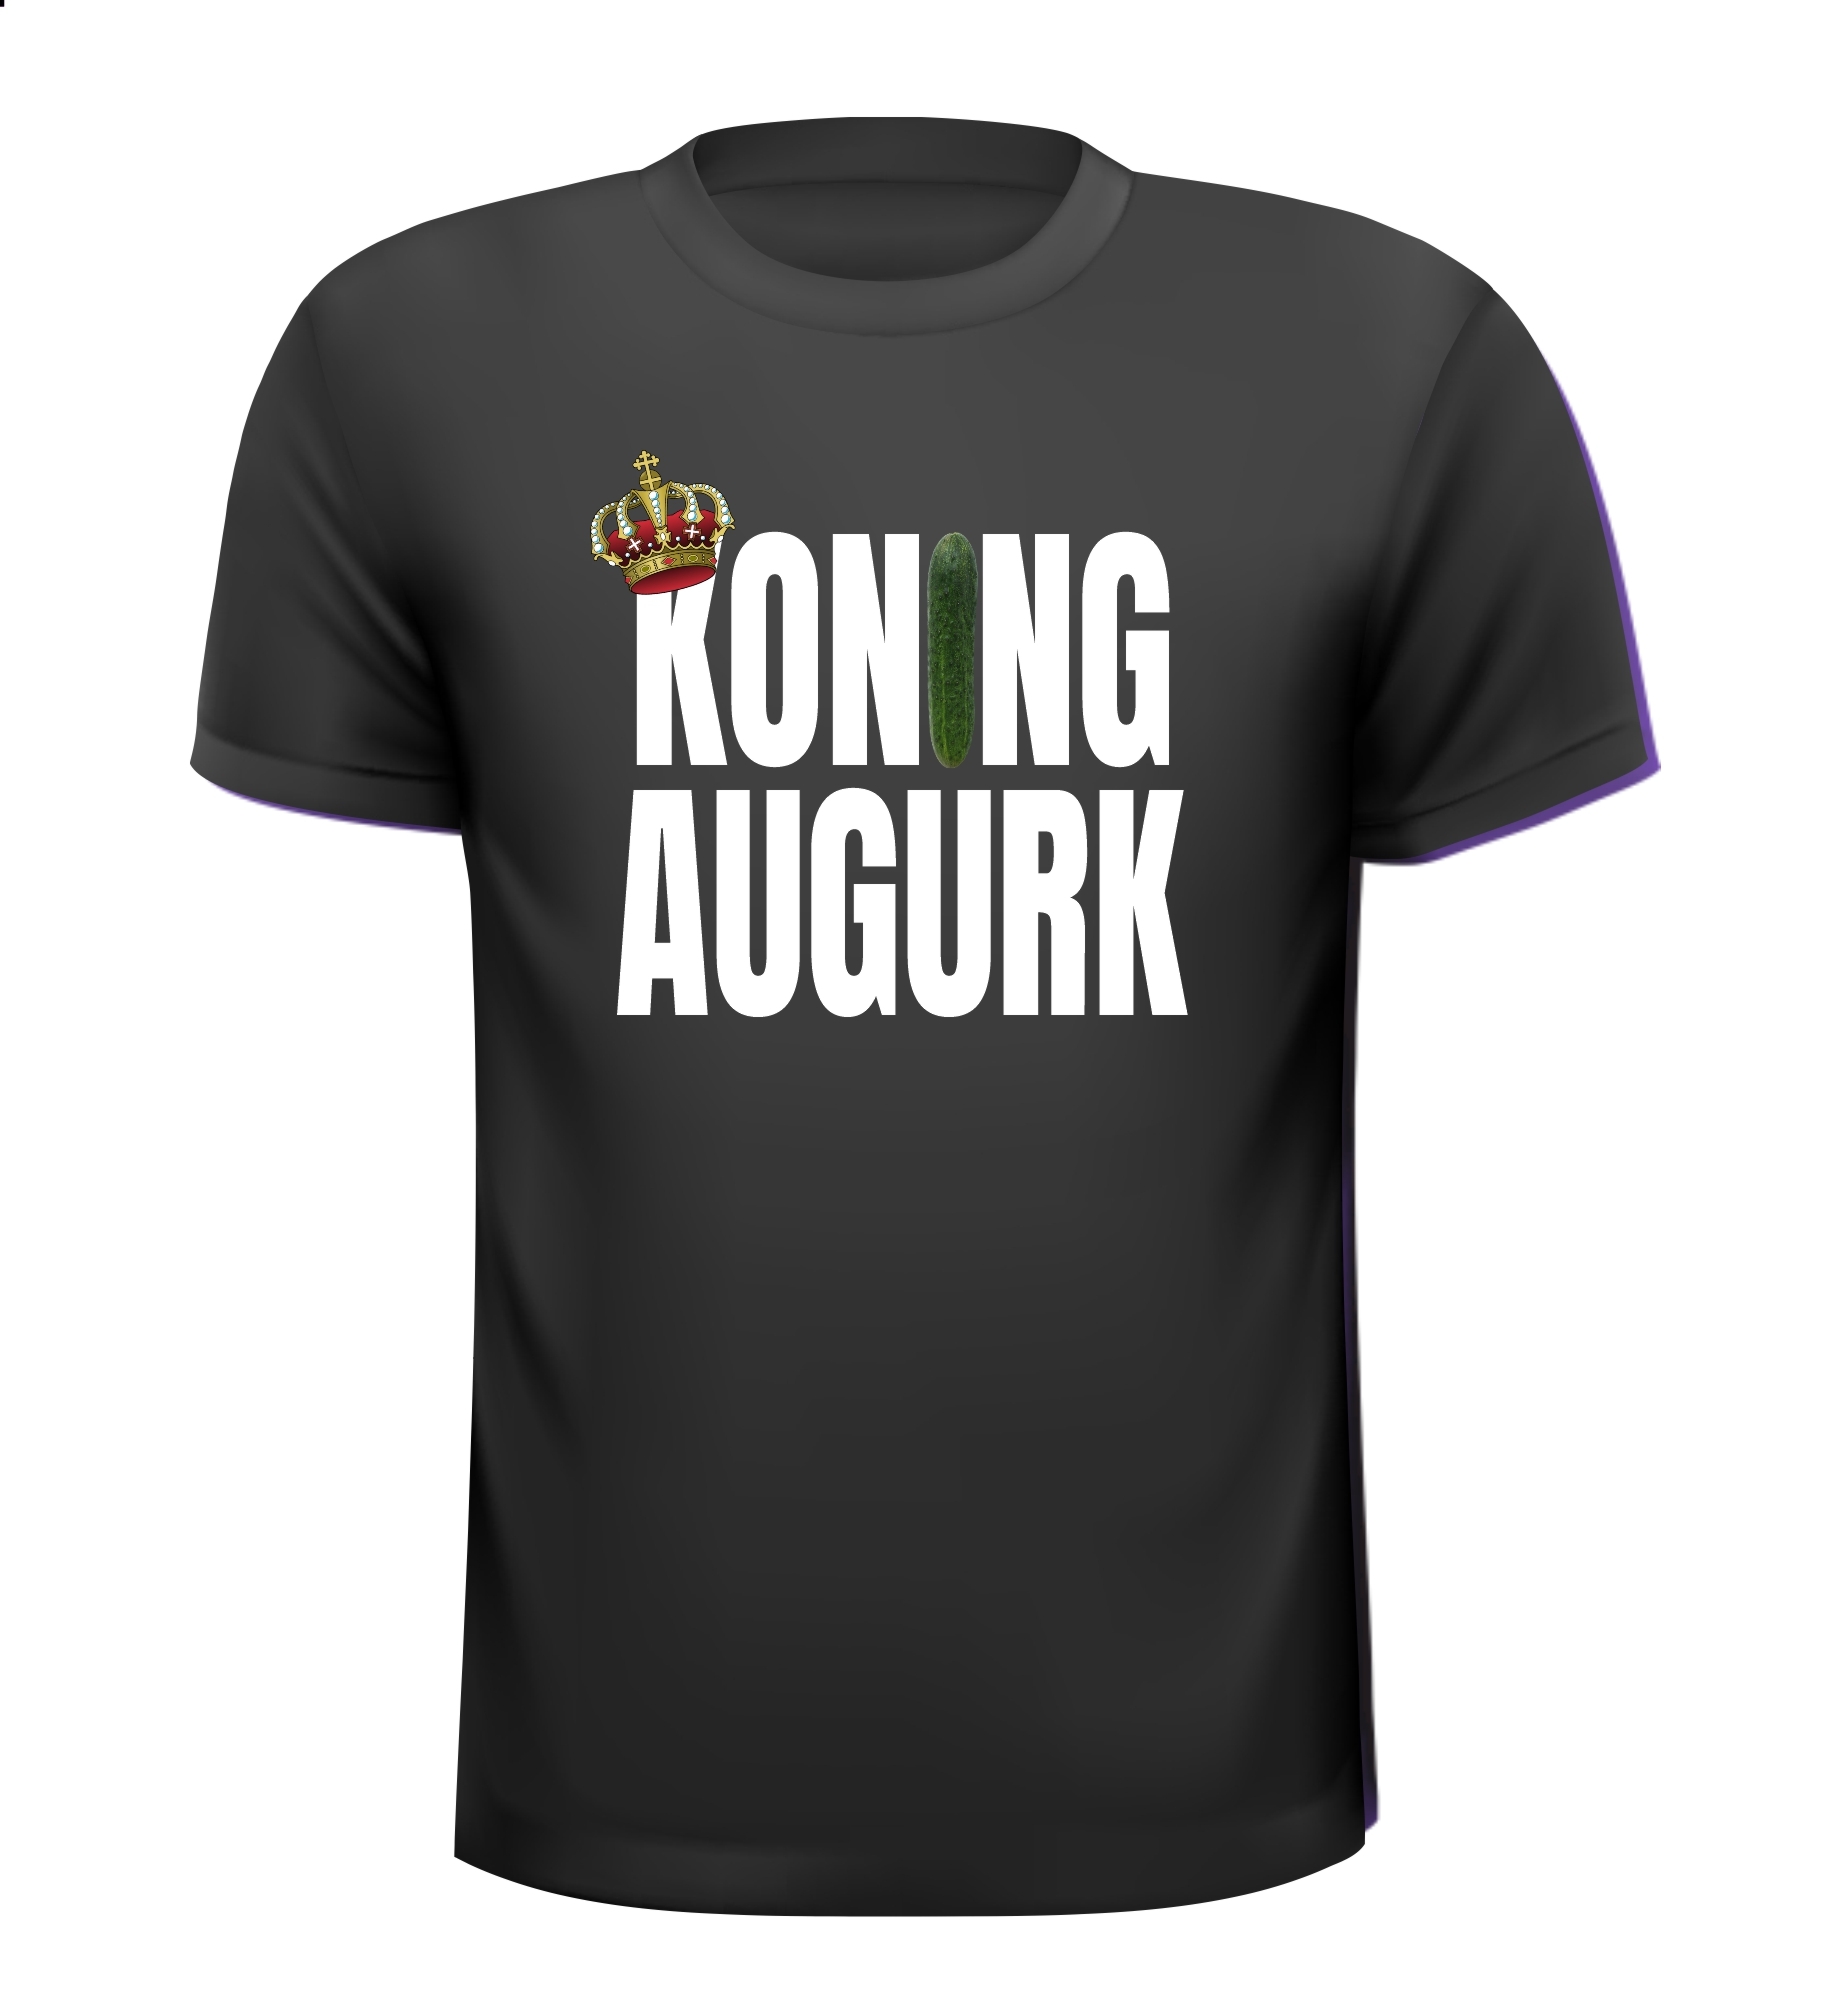 T-shirtje voor koning augurk